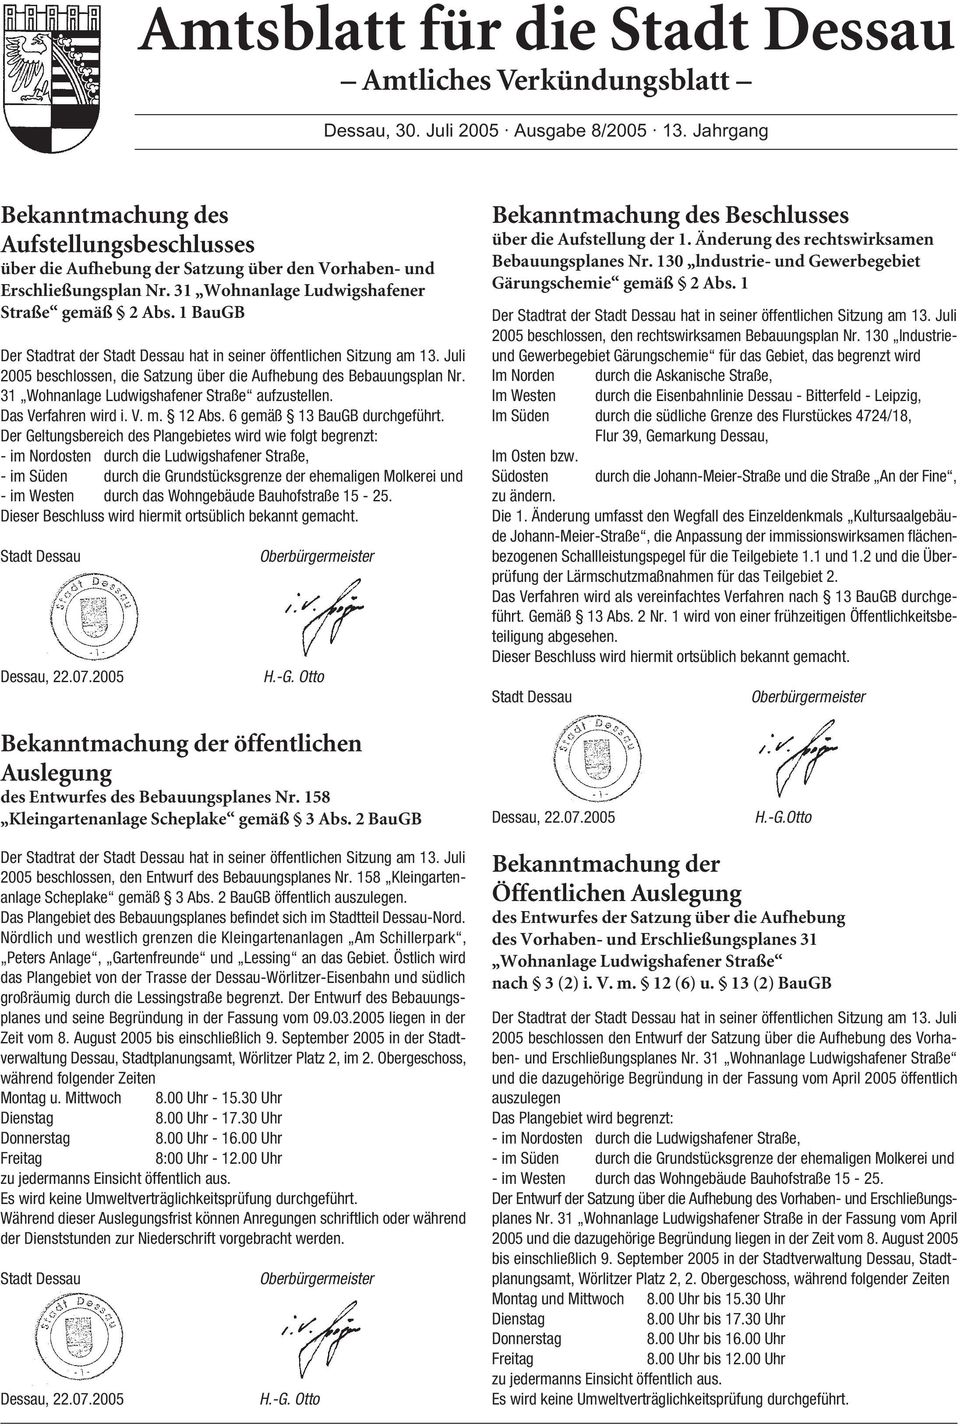 1 BauGB Der Stadtrat der Stadt Dessau hat in seiner öffentlichen Sitzung am 13. Juli 2005 beschlossen, die Satzung über die Aufhebung des Bebauungsplan Nr.